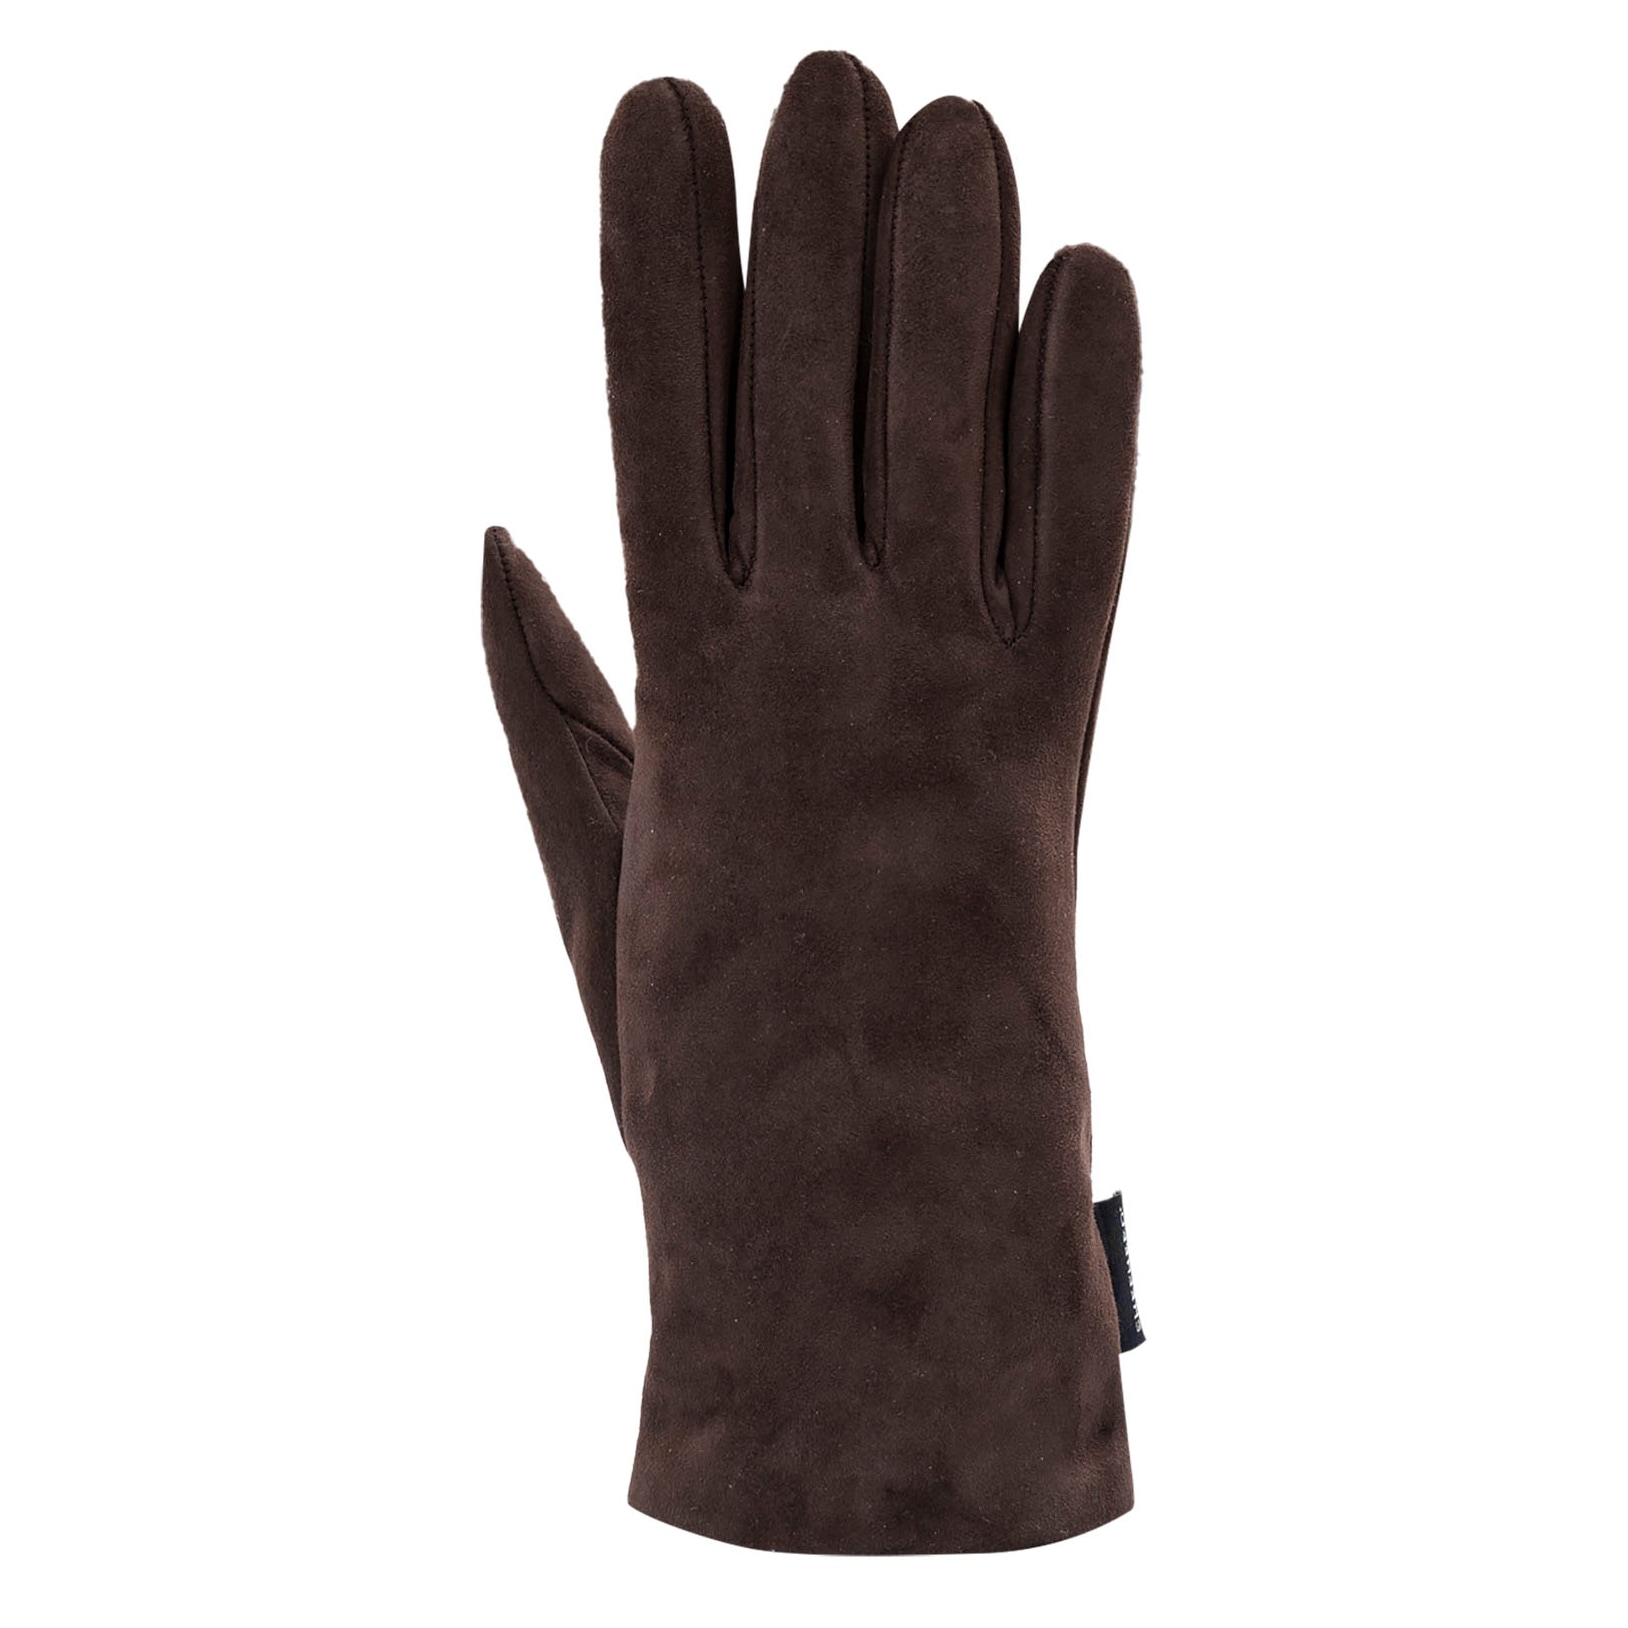 Estelle gloves